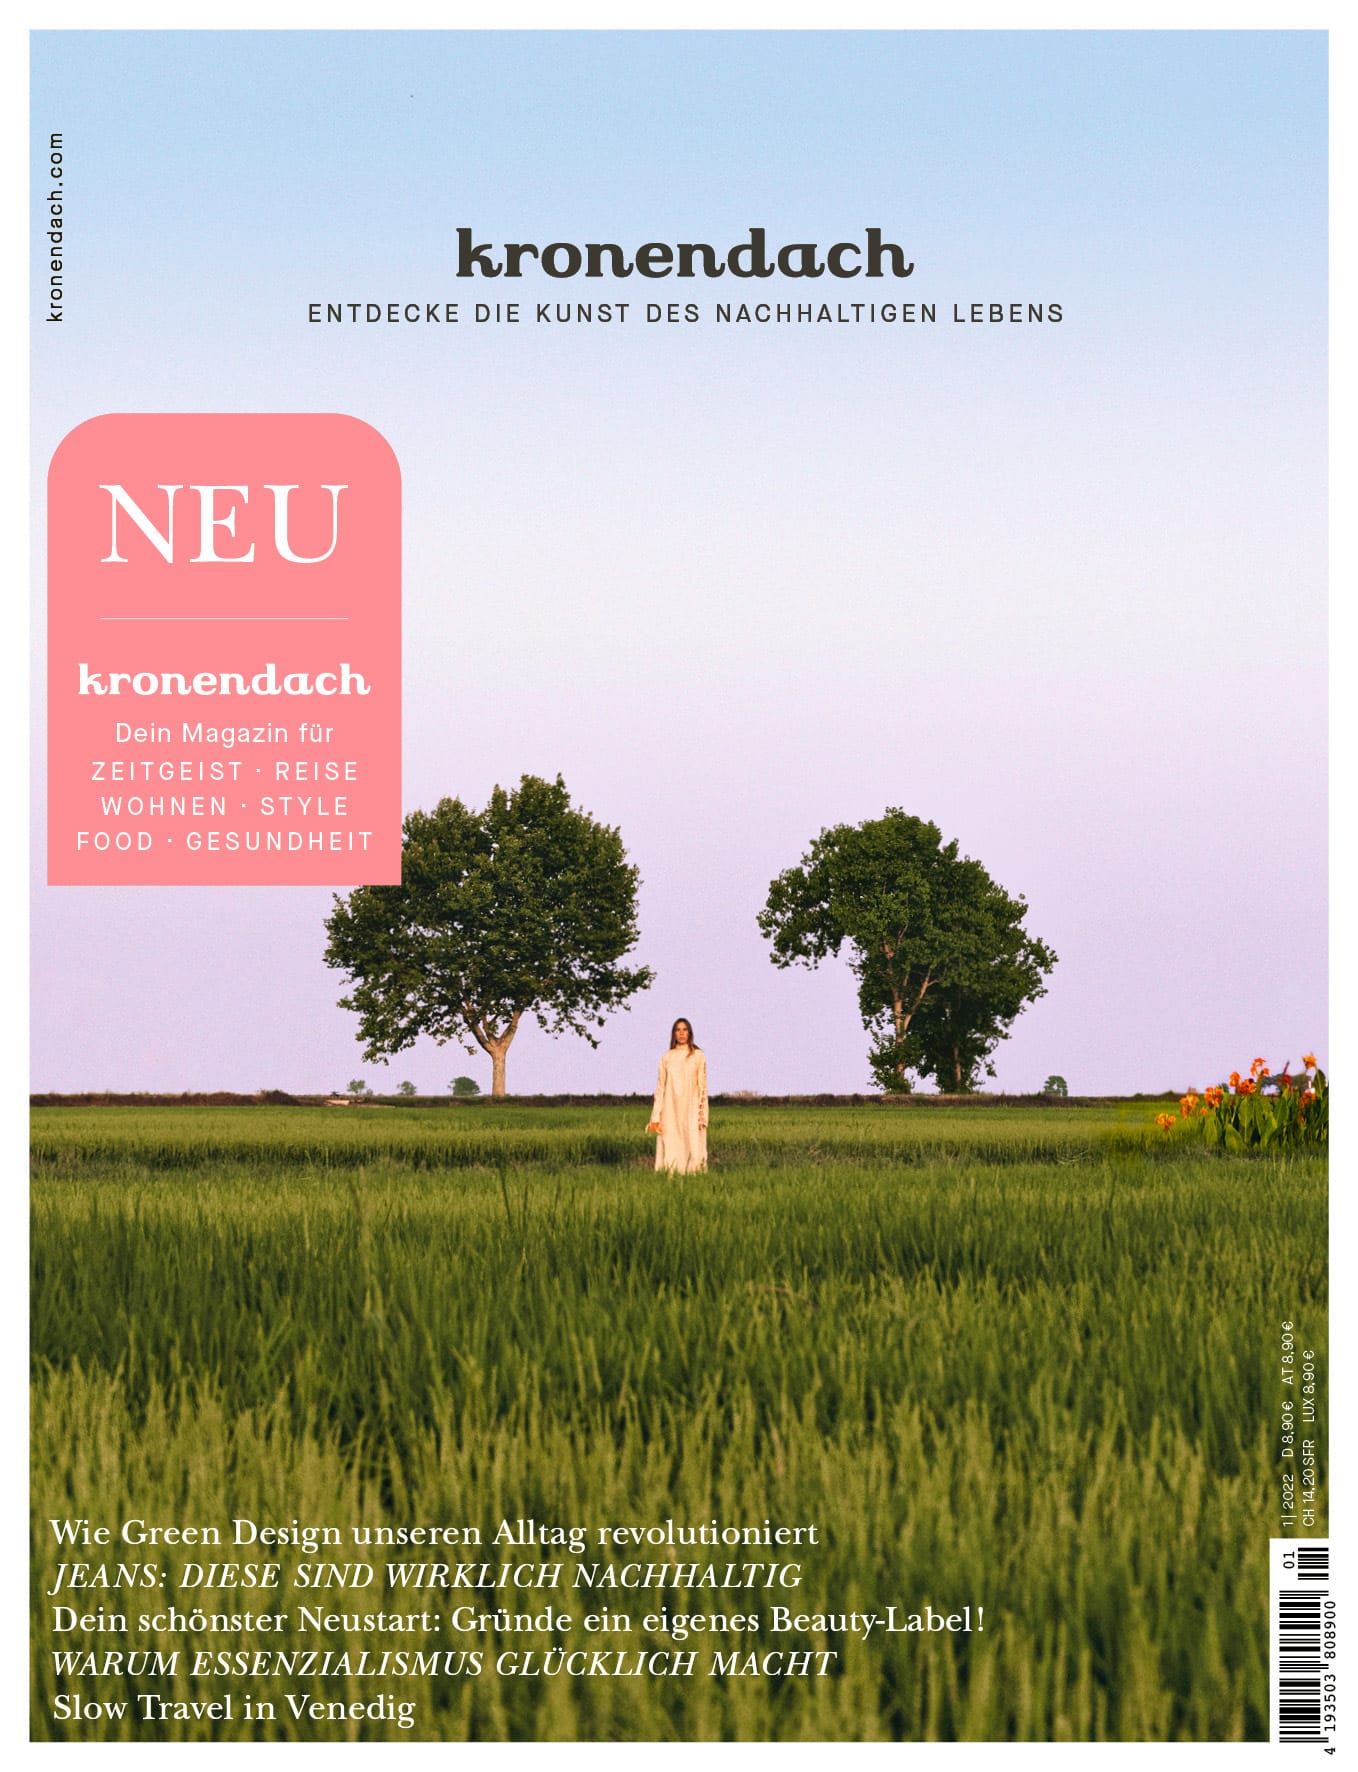 Die erste Ausgabe von kronendach, dem neuen Magazin im Portfolio der Funke Mediengruppe.